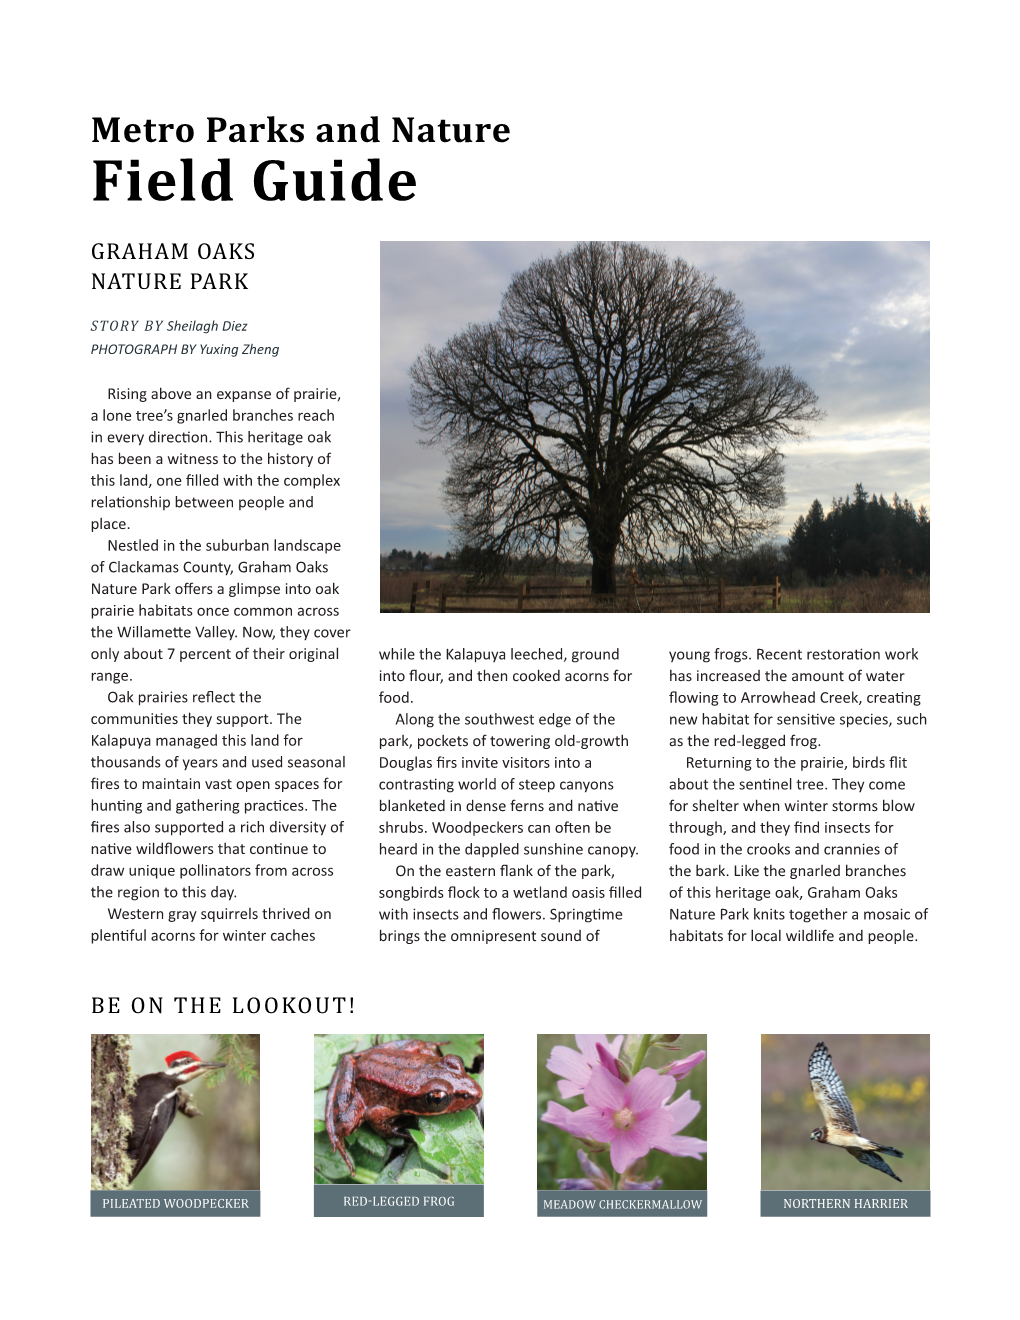 Graham Oaks Field Guide Feb 2016 PDF Open